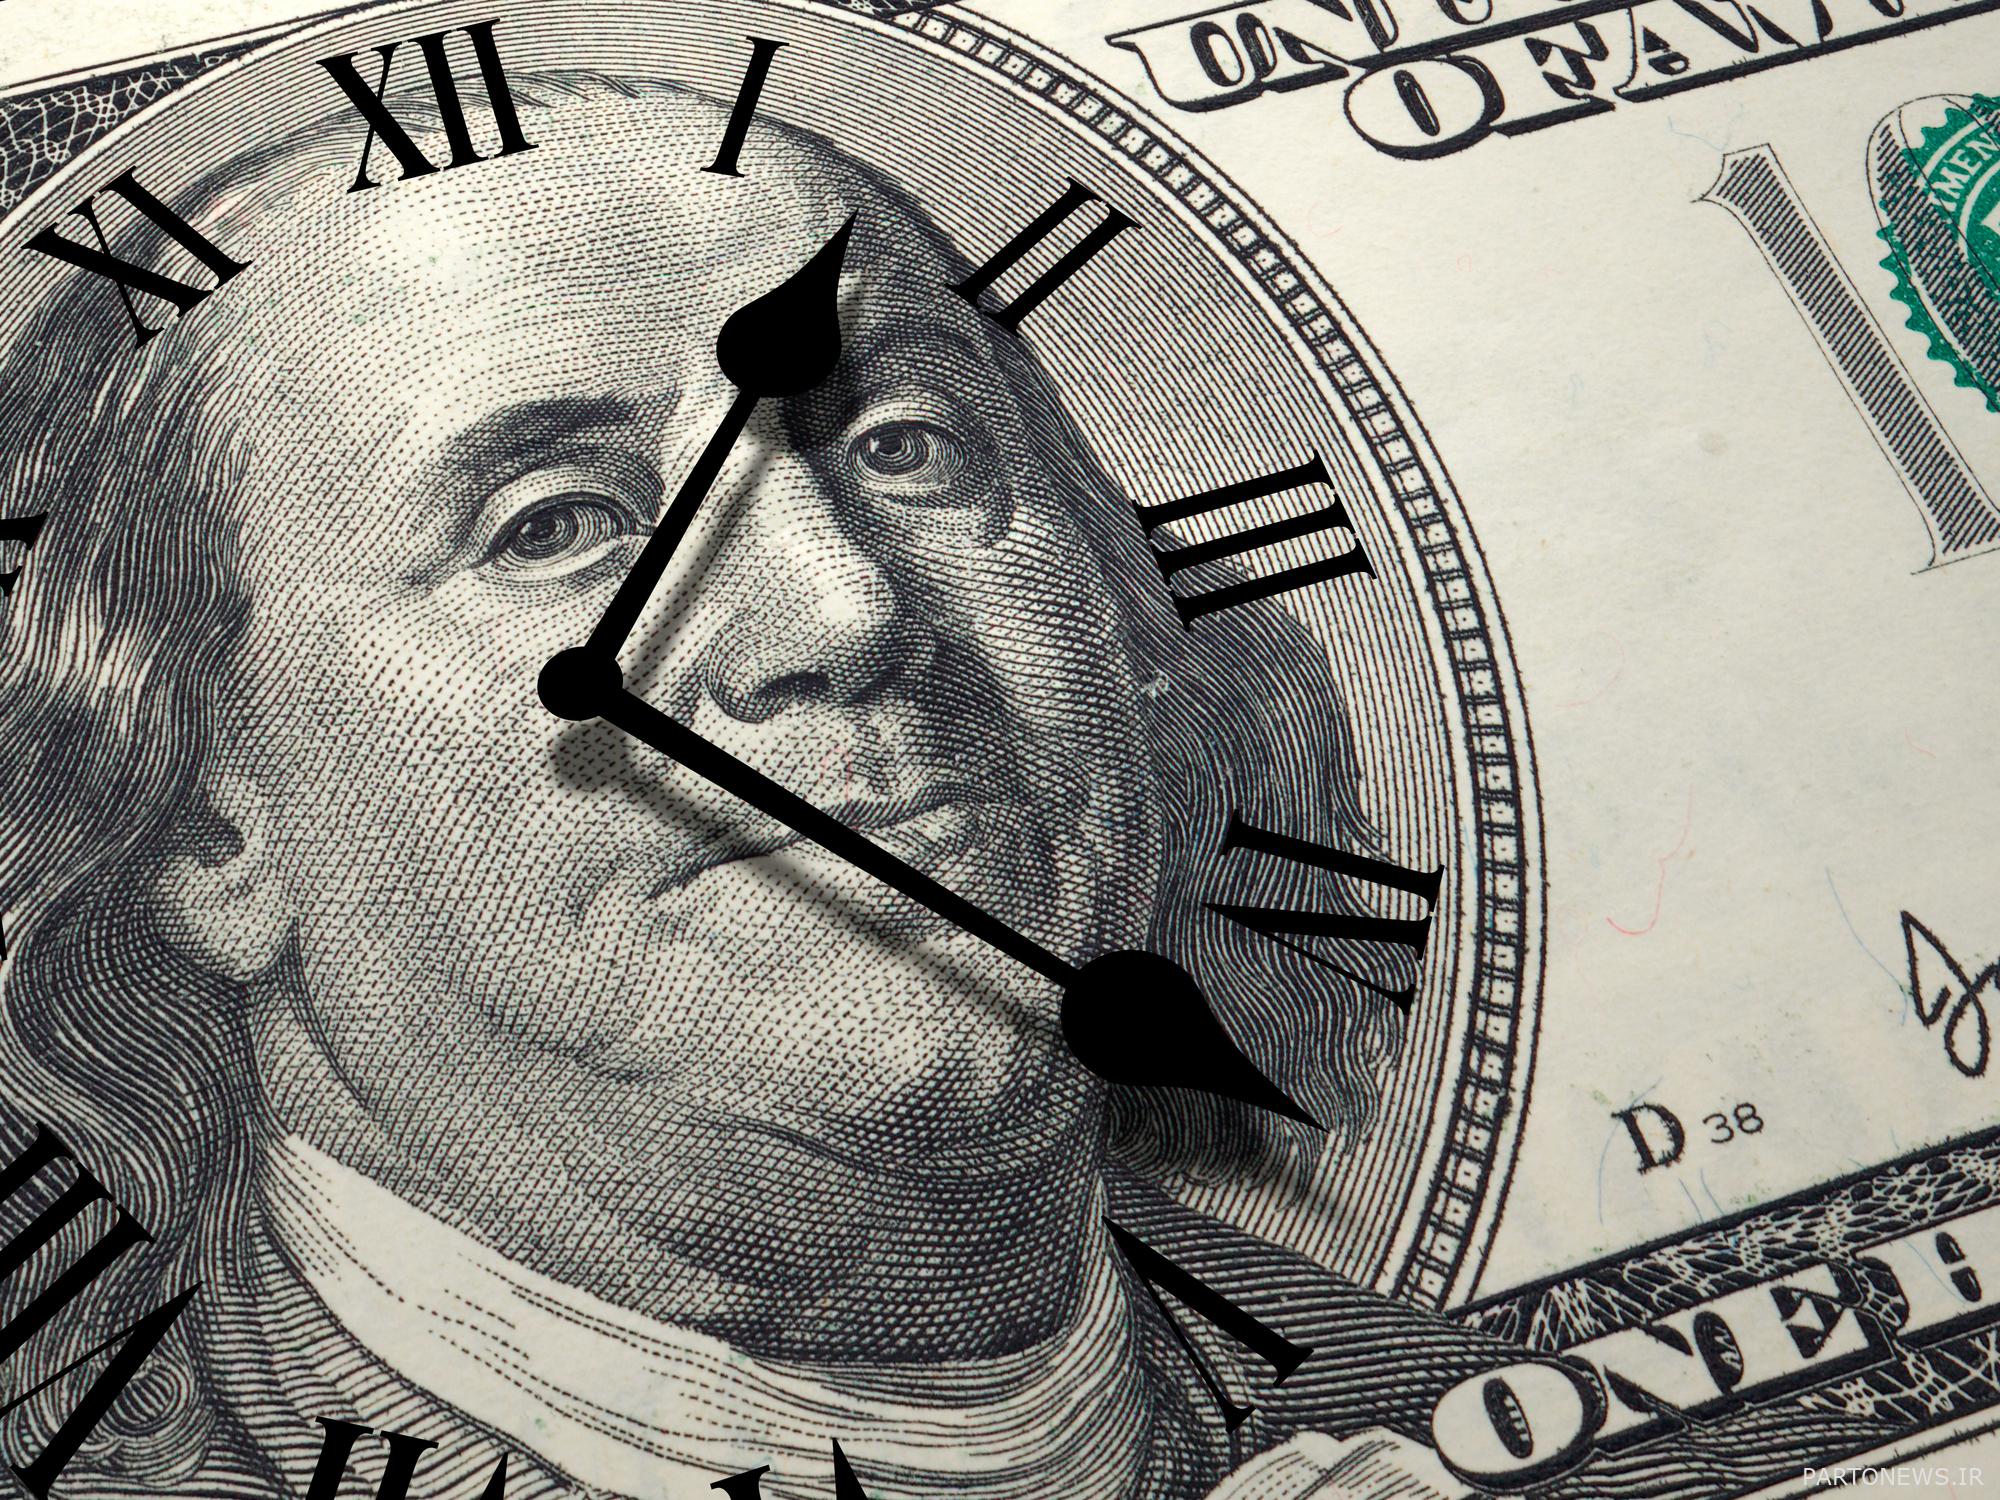 زمان مفهوم پول است با اسکناس صد دلاری و صفحه ساعت روی آن.